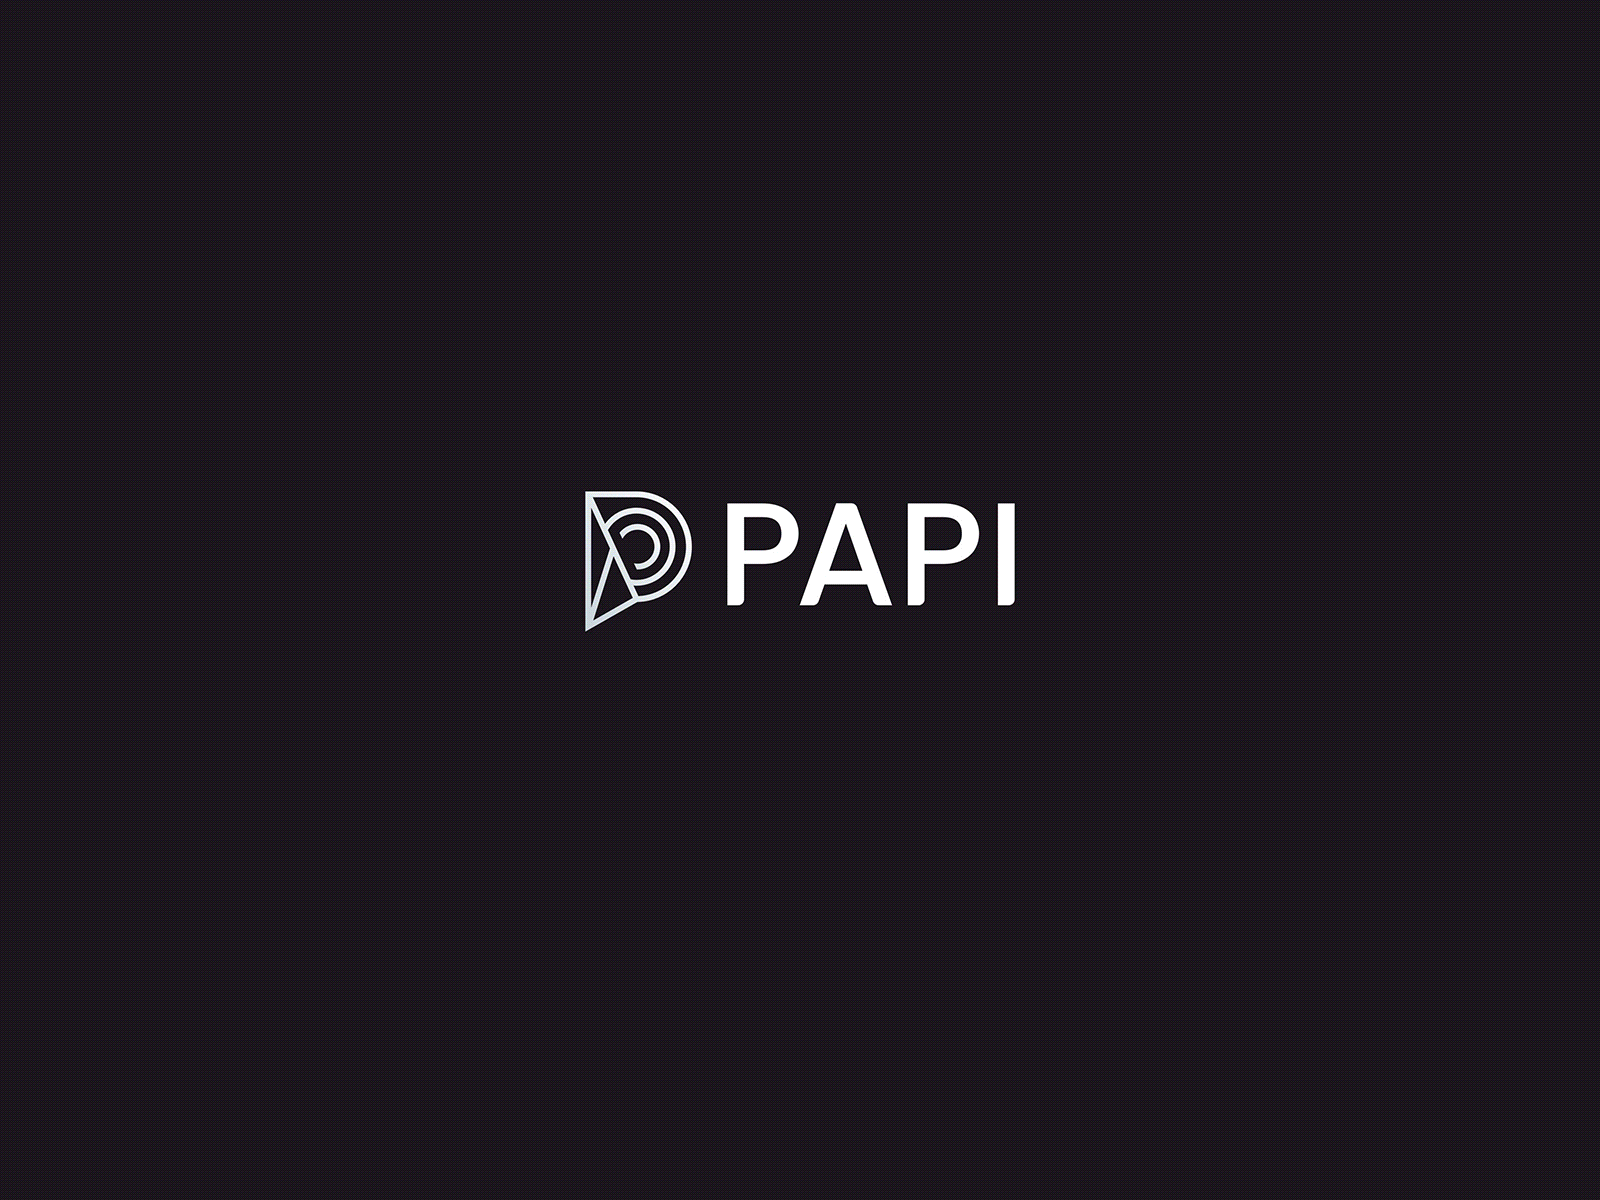 PAPI Original Wallpaper by papiboys | Society6